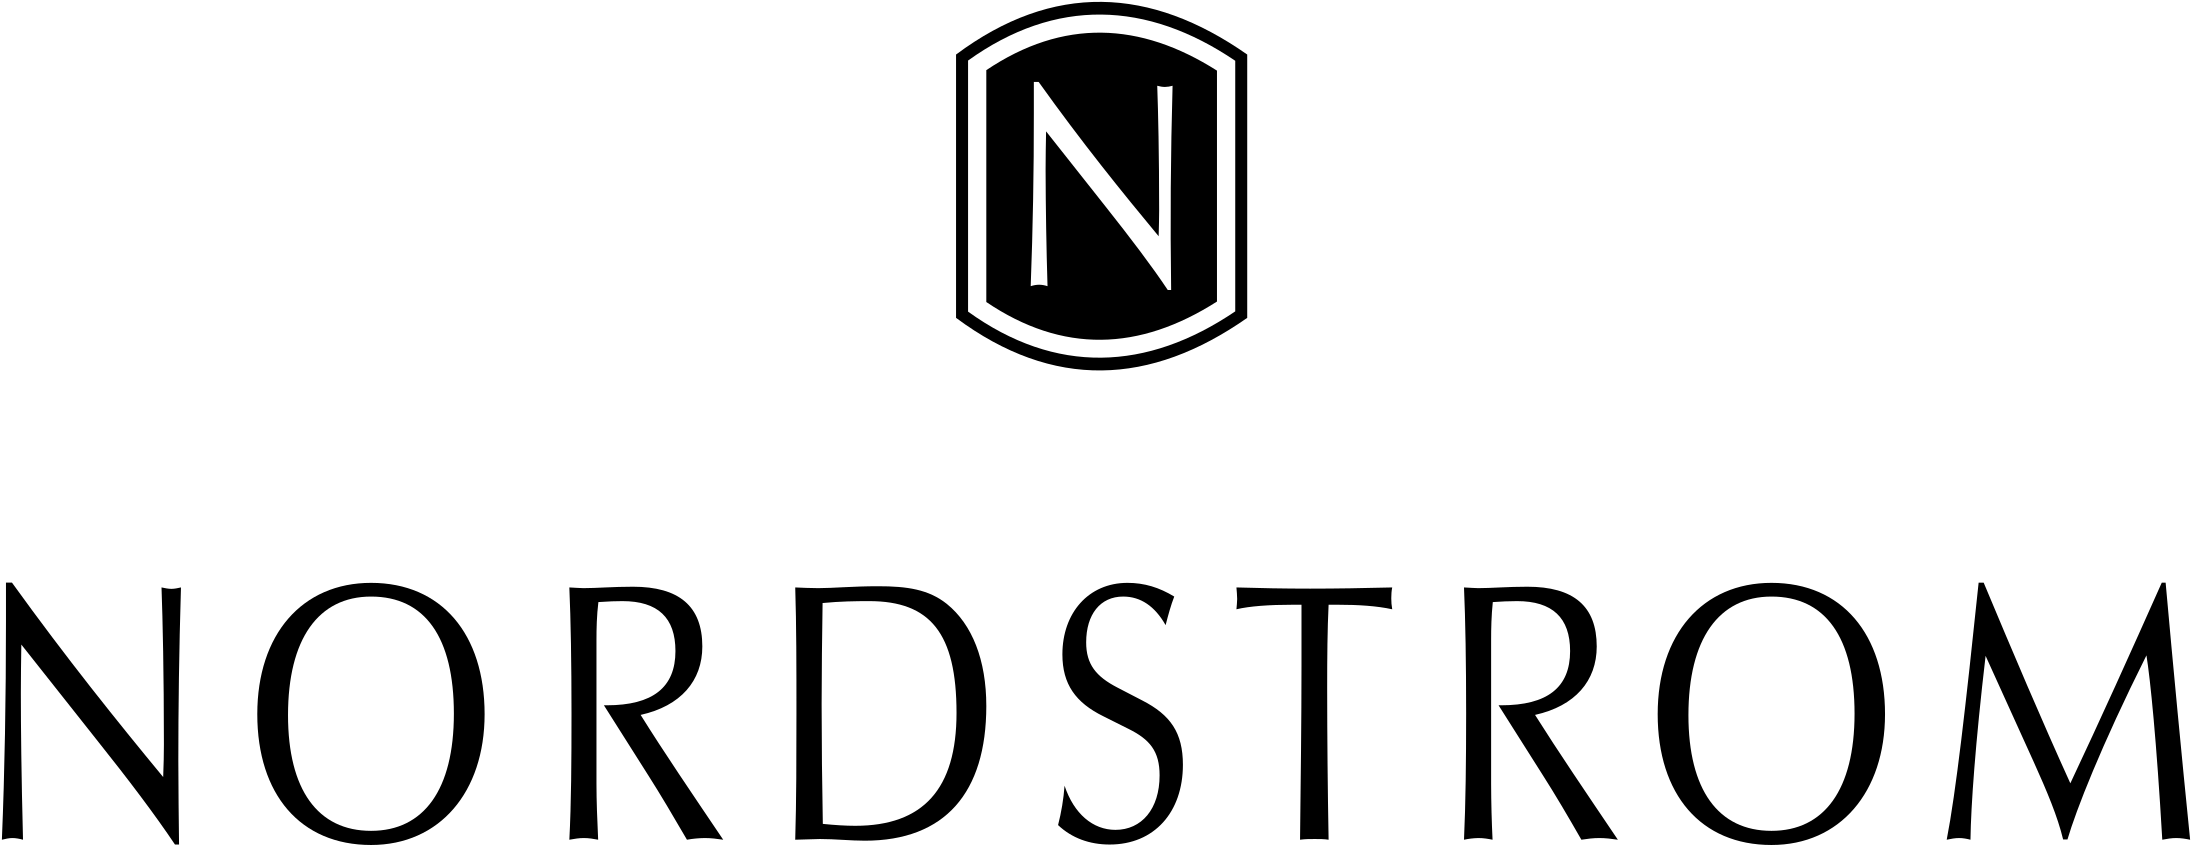 223-2234316_nordstrom-logo-png-transparent-nordstrom-logo.png